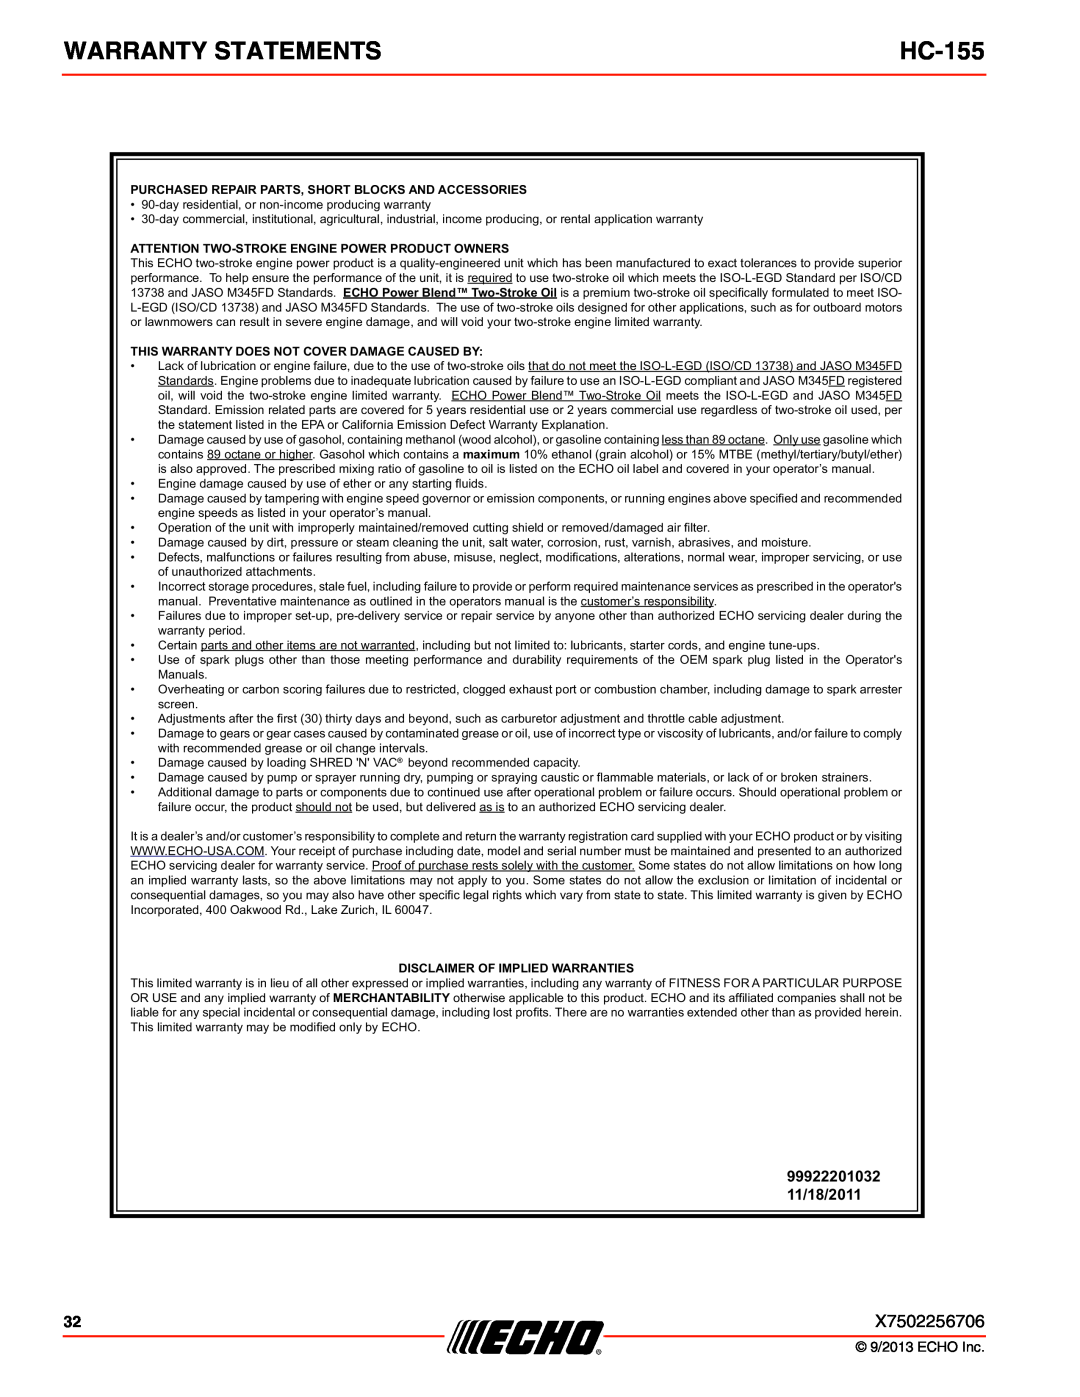 Echo HC-155 specifications Warranty Statements, 99922201032 11/18/2011 